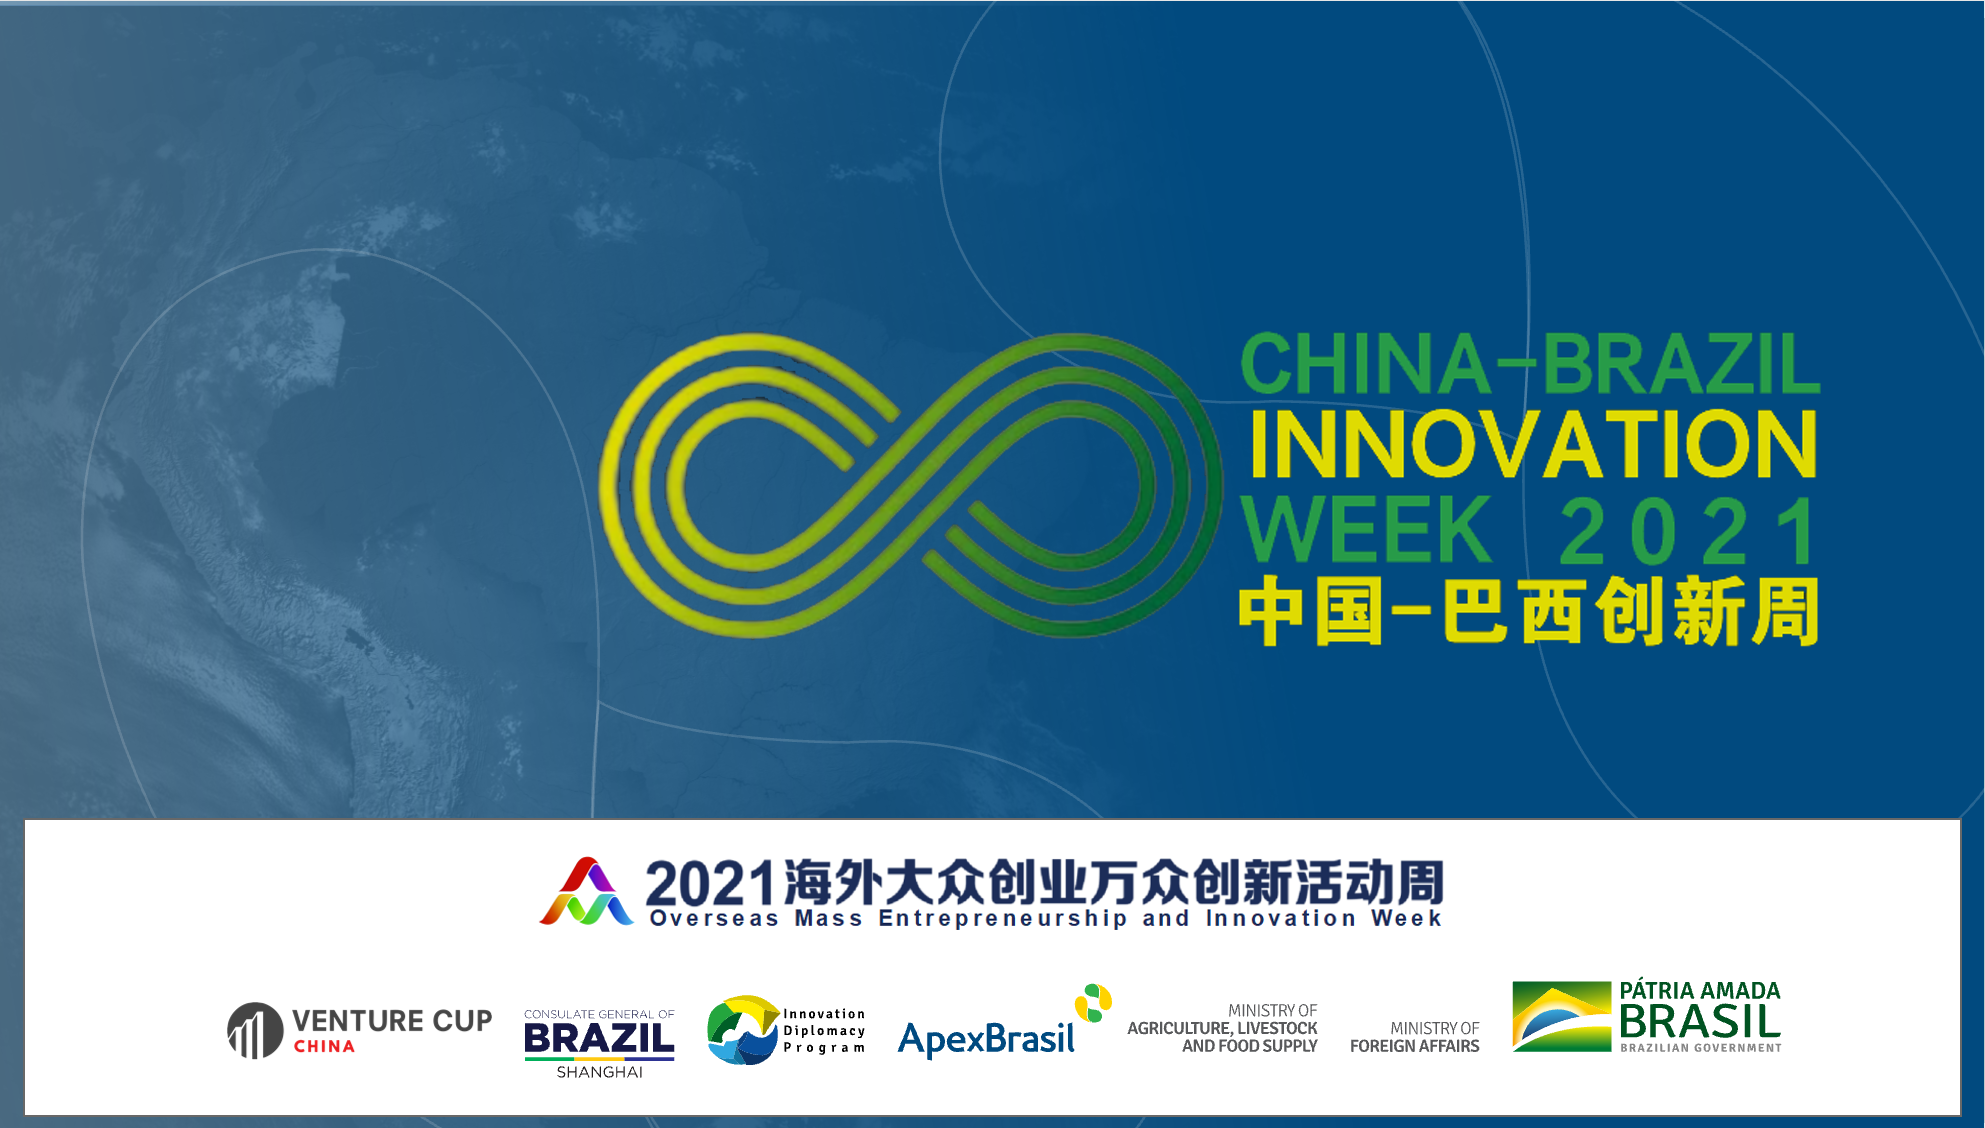 Evento reúnirá startups e grandes empresas em agricultura e sustentabilidade na China e Brasil